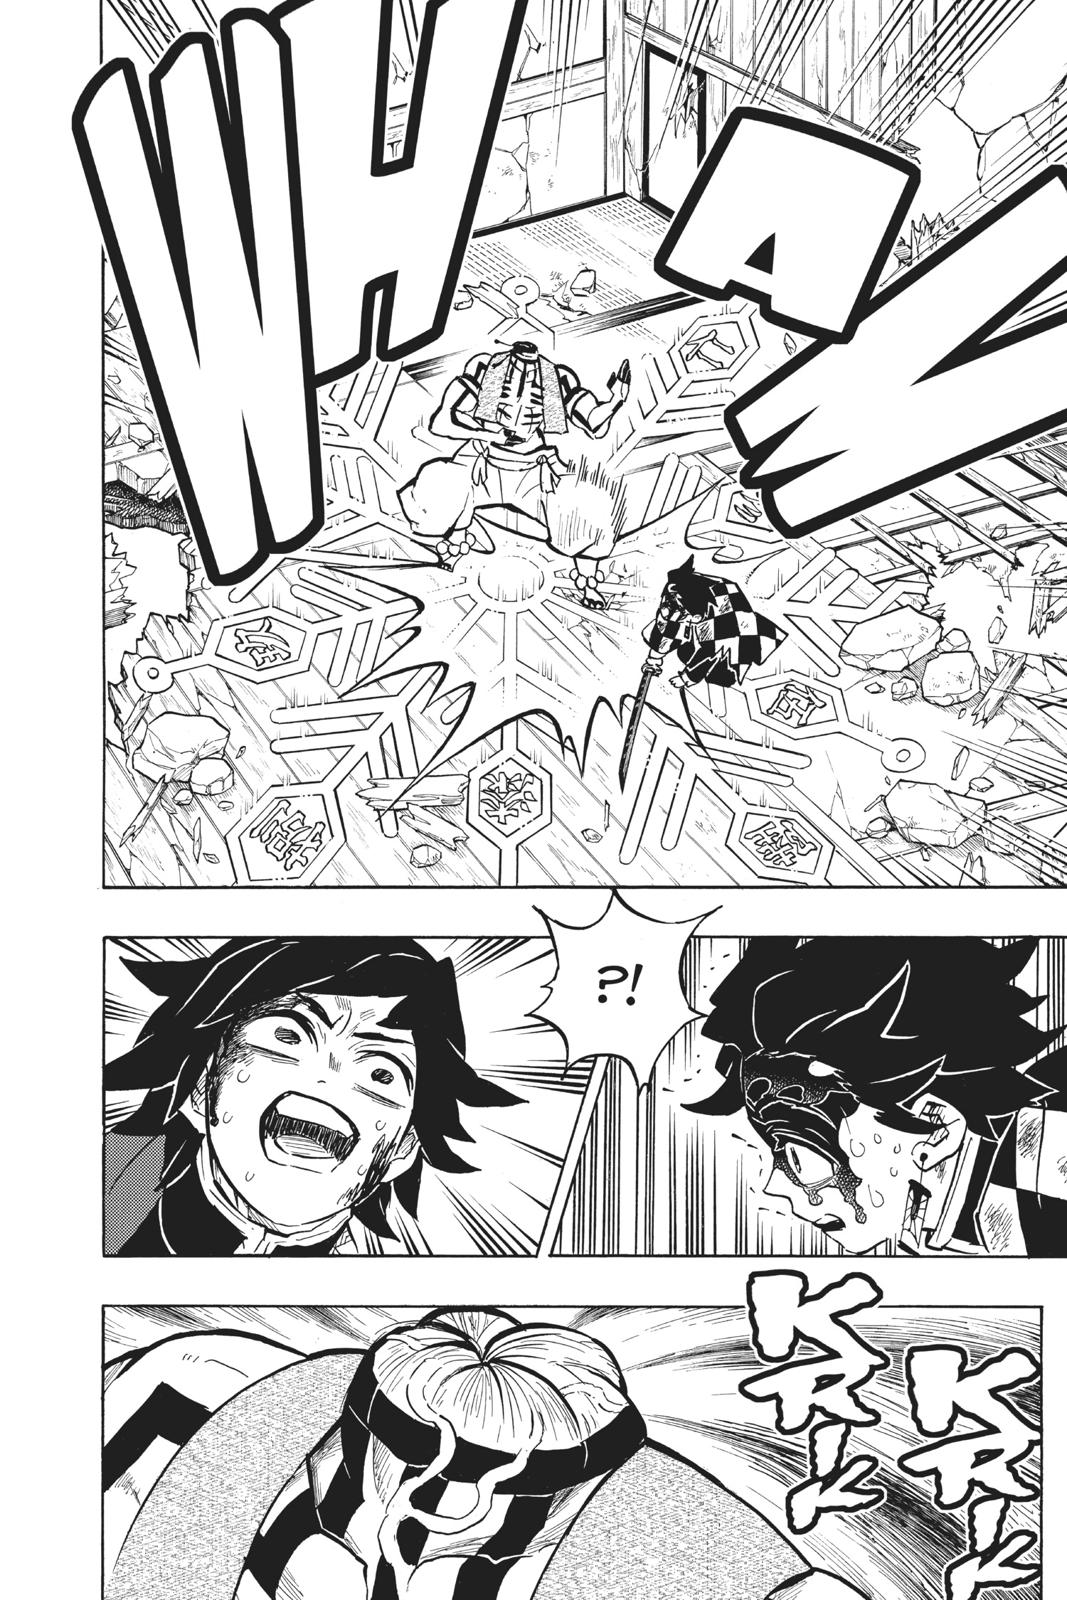 Demon Slayer Manga Manga Chapter - 153 - image 5